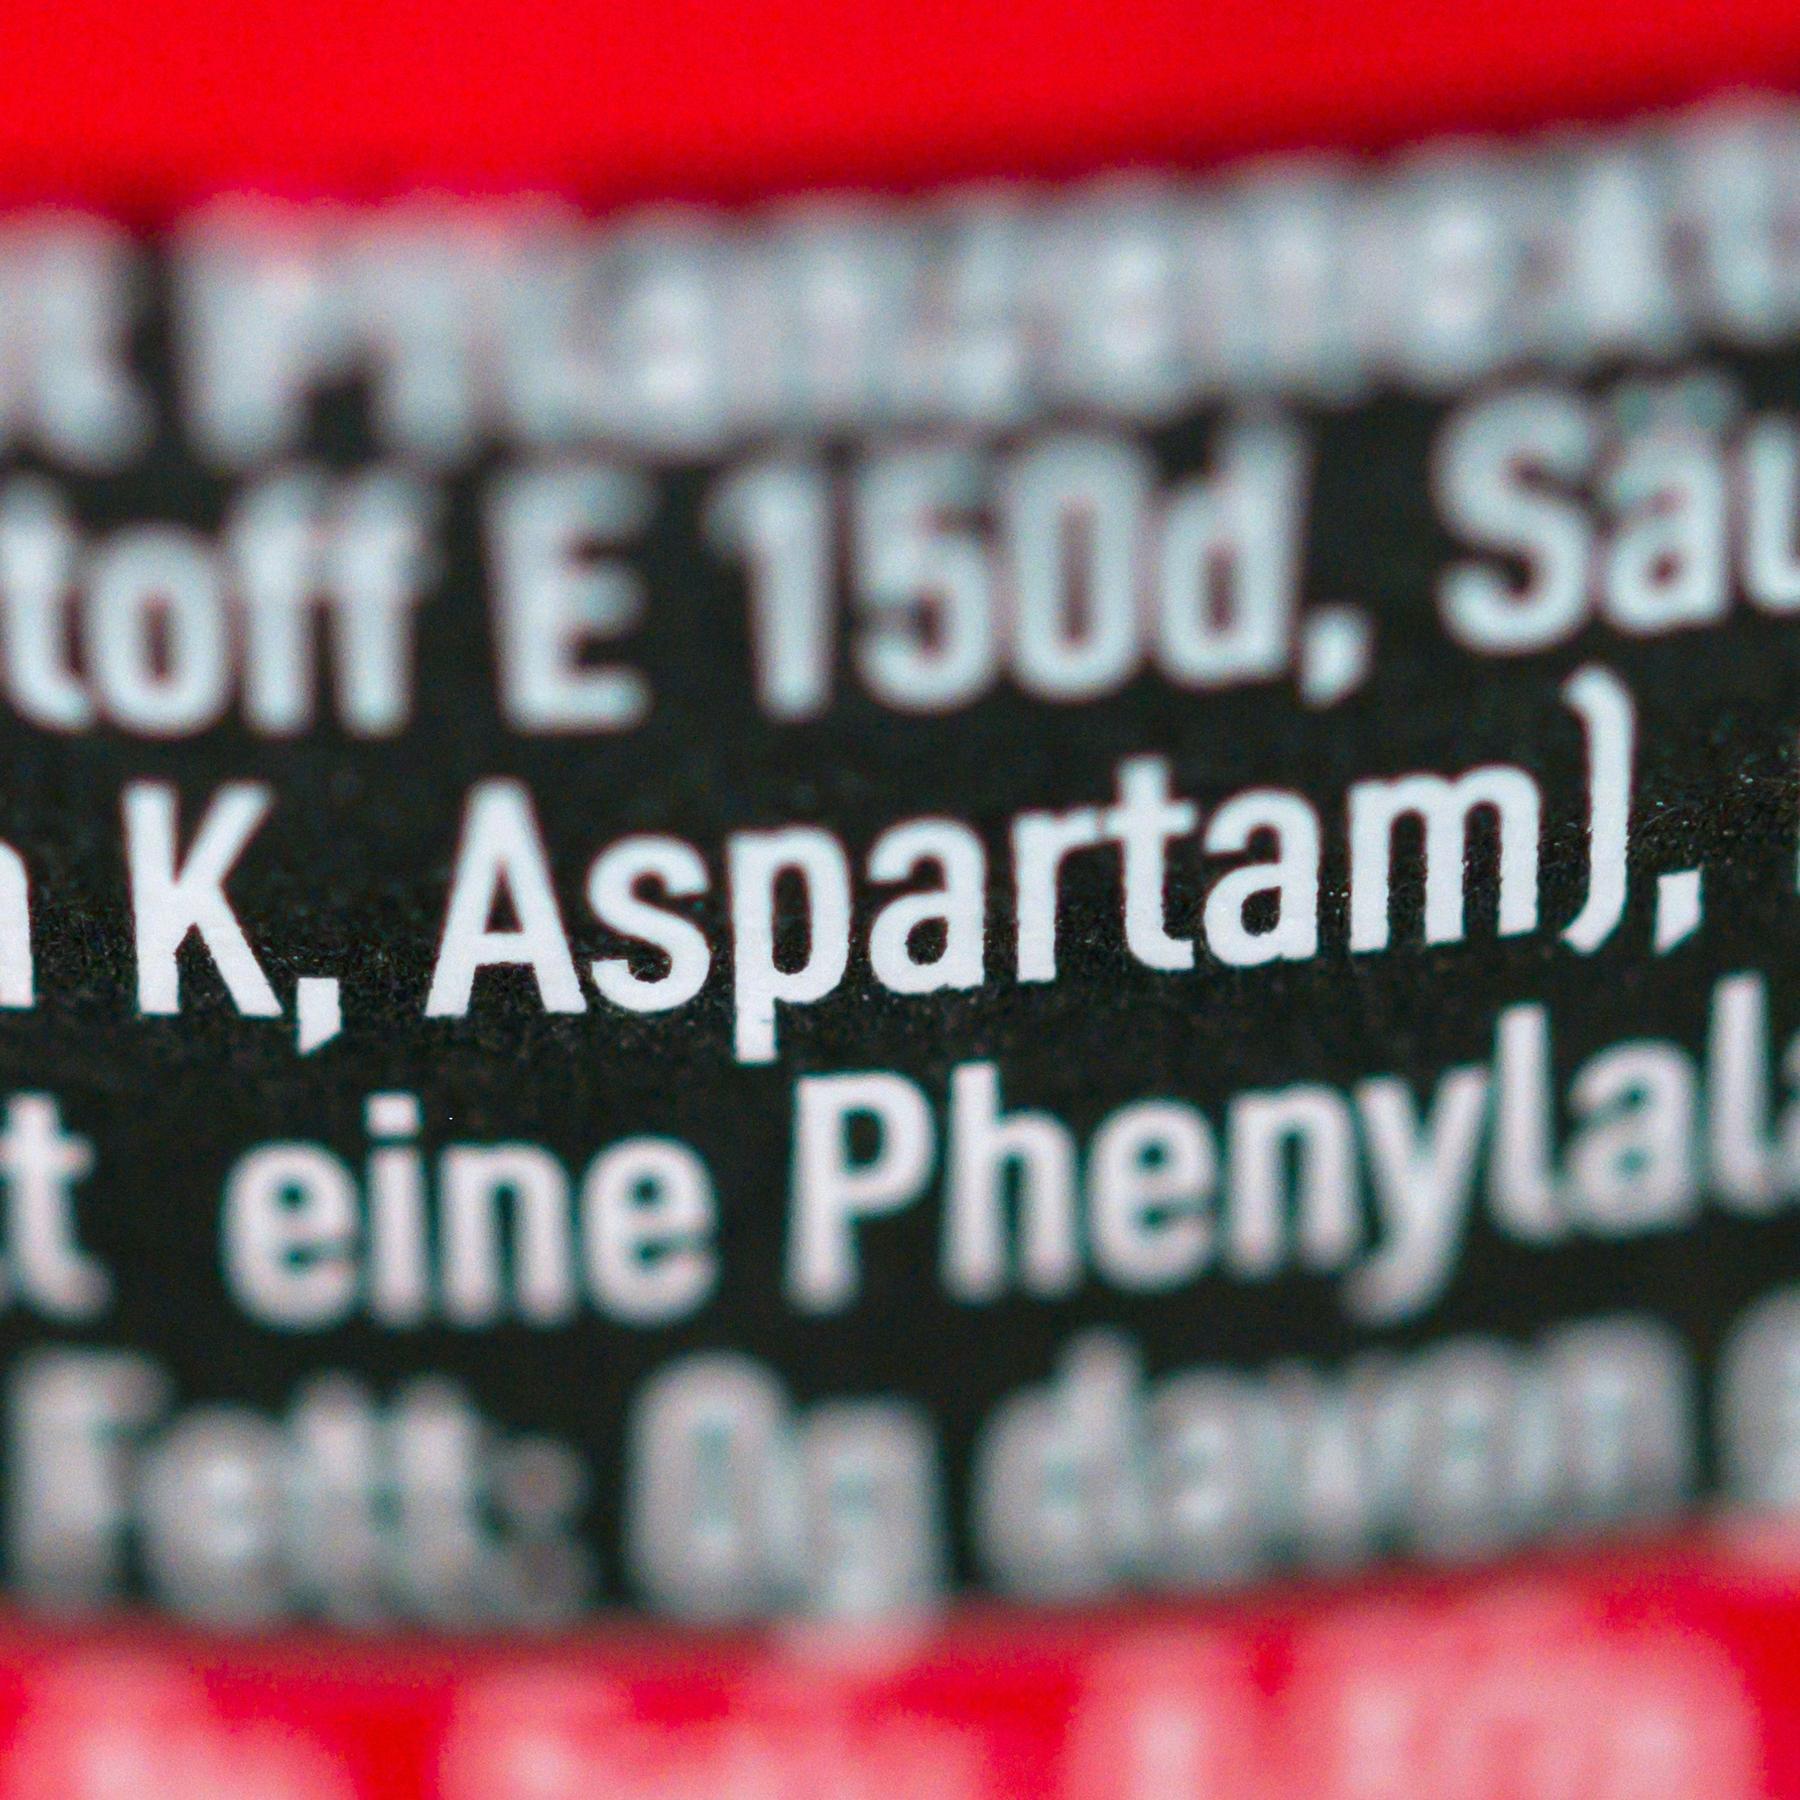 Krebsrisiko durch Aspartam? - Wie die IARC das Süßungsmittel einstuft